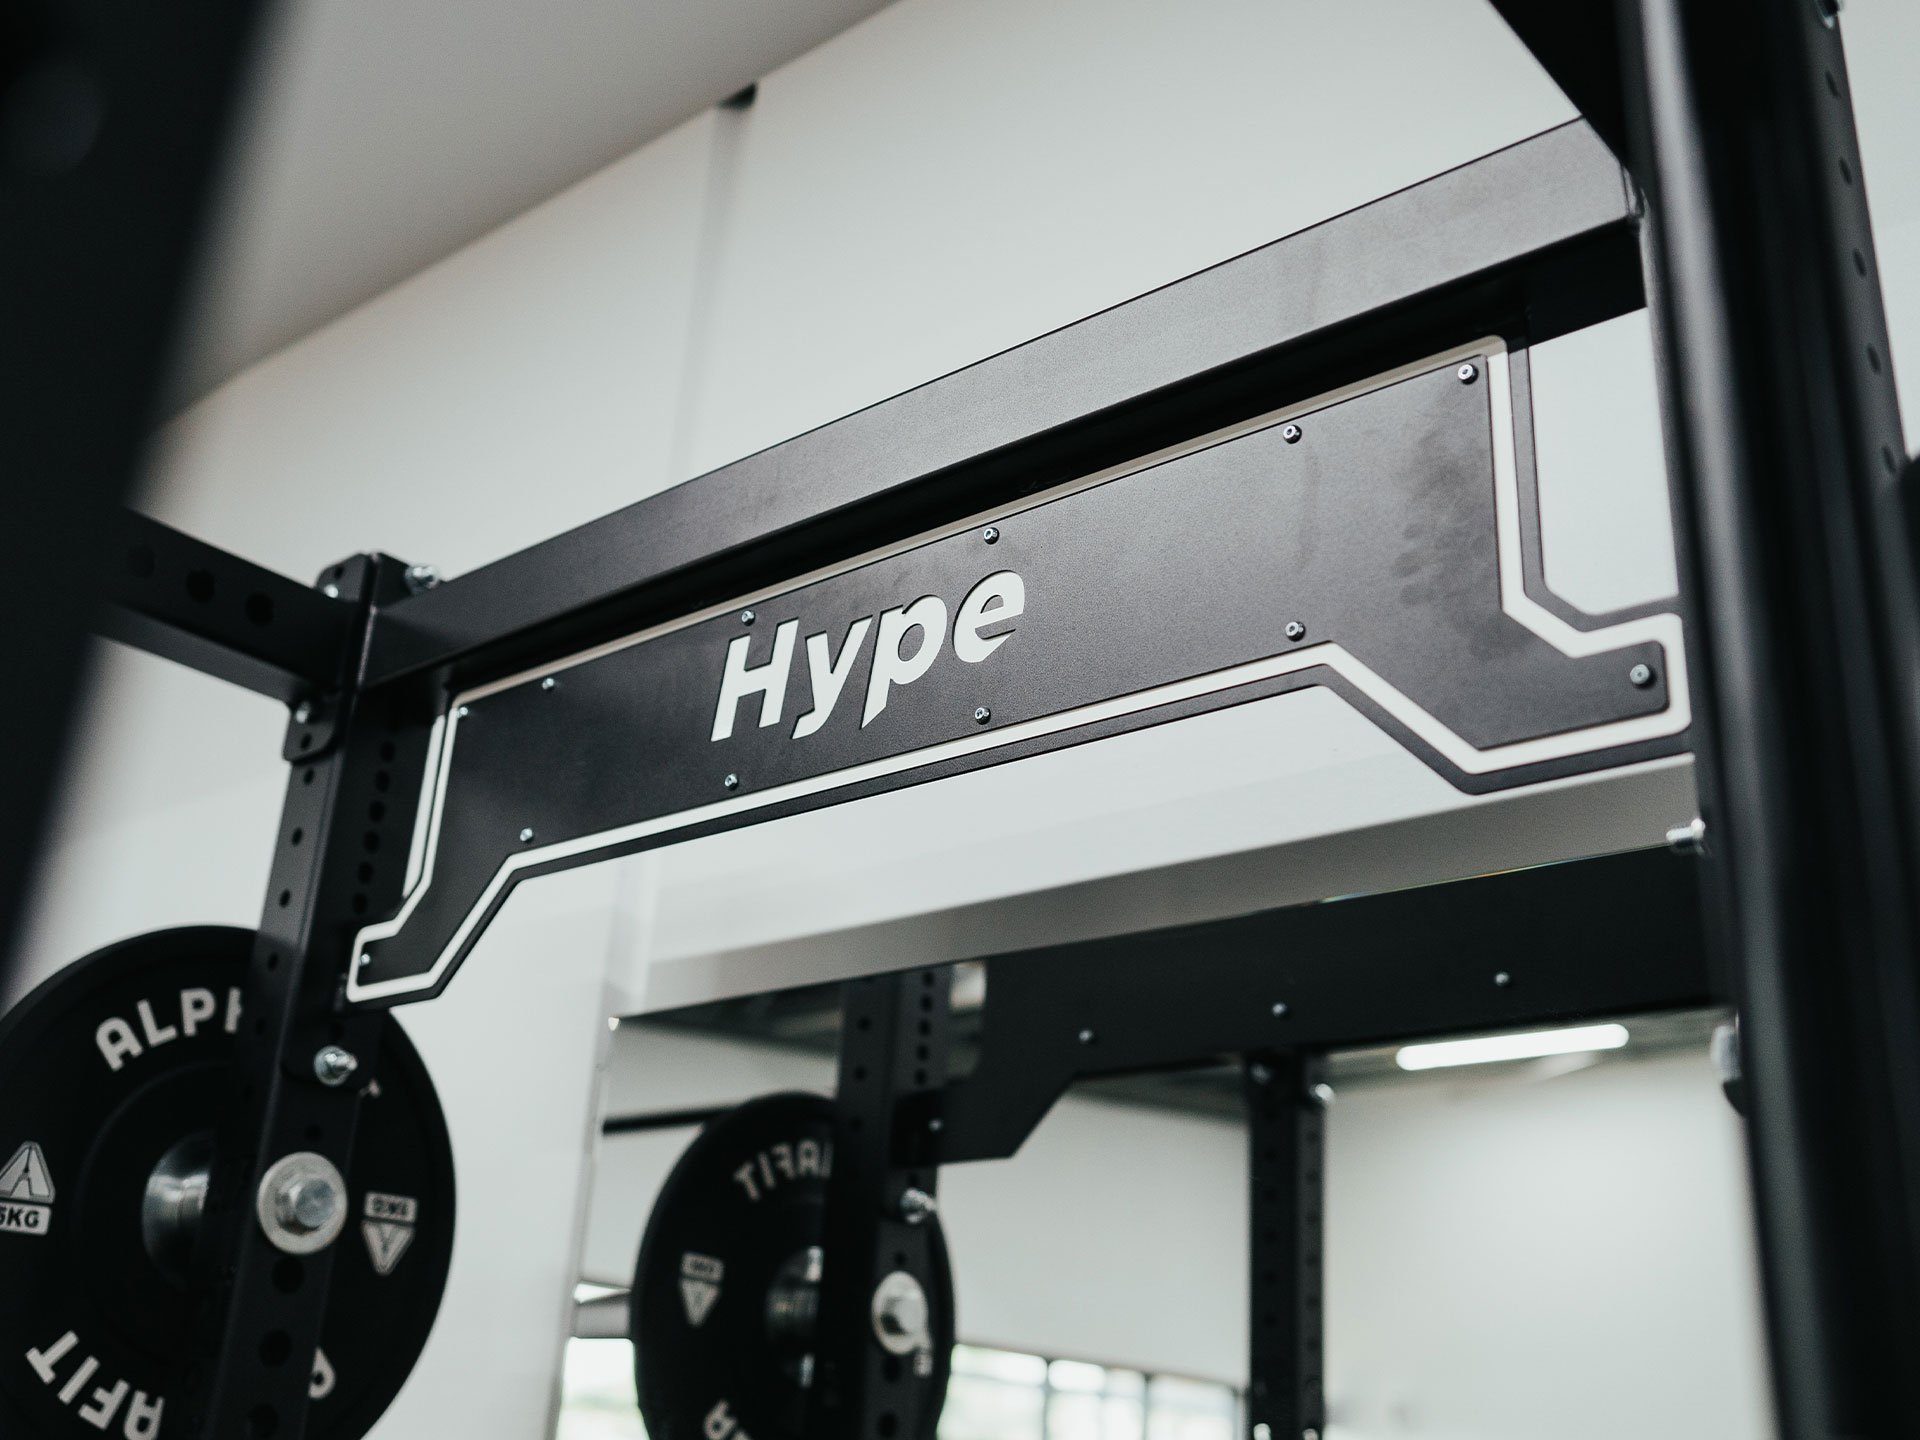 AlphaFit Custom Bumper Plate Storage for World Gym